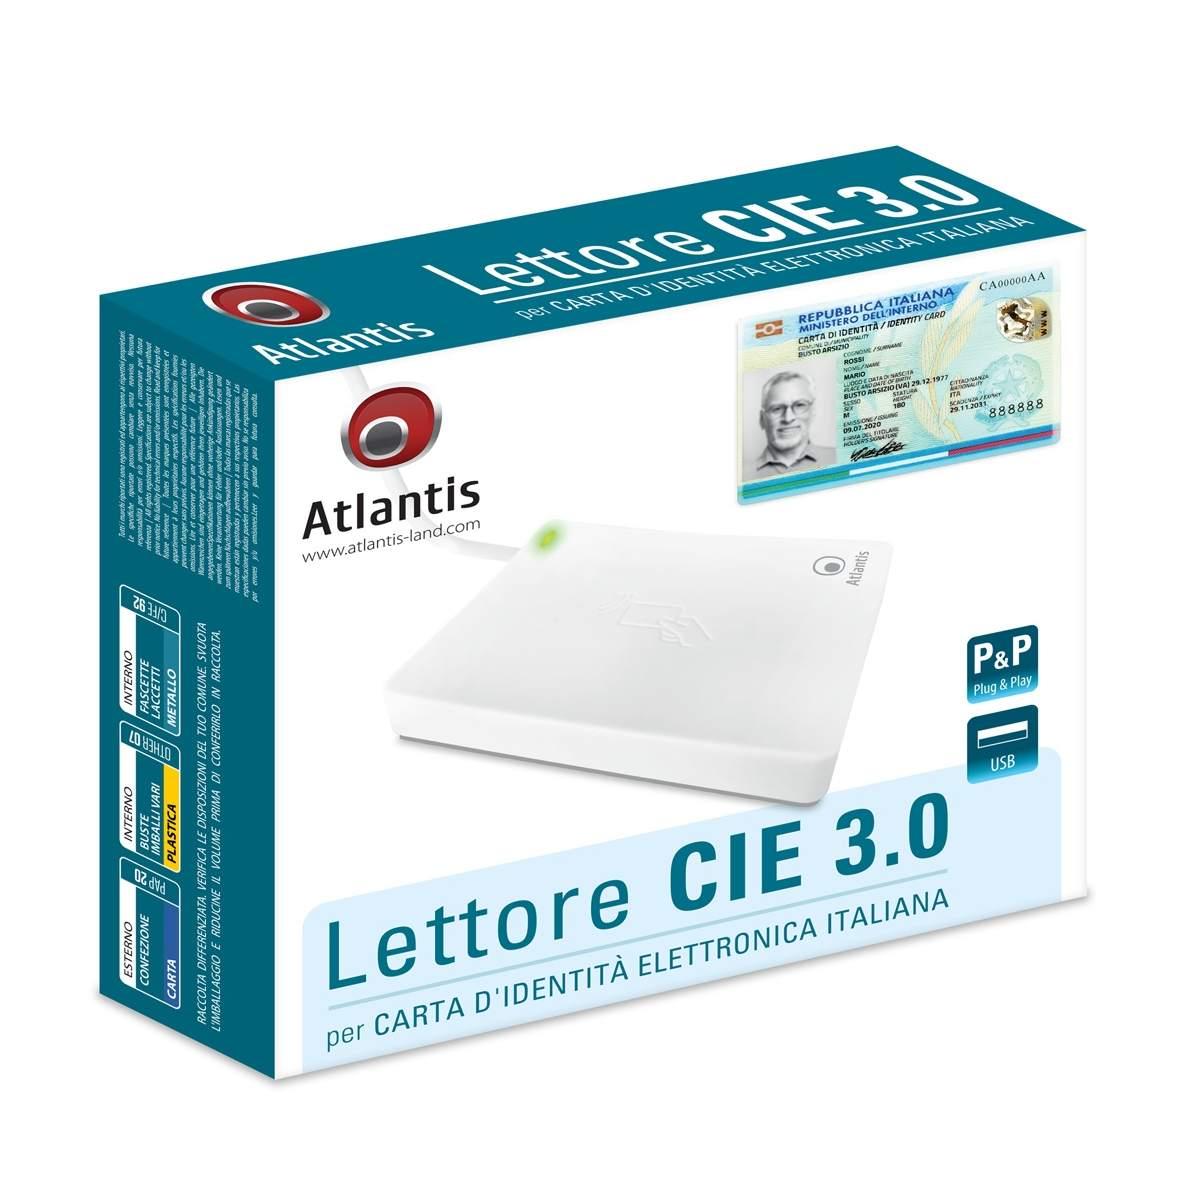 Atlantis P005-CIEA211 lettore cie 3.0 carta d'identità elettronica  italiana, adatto per INPS, Ag. delle entrate, INAIL, Fascicolo sanitario,  ANPR